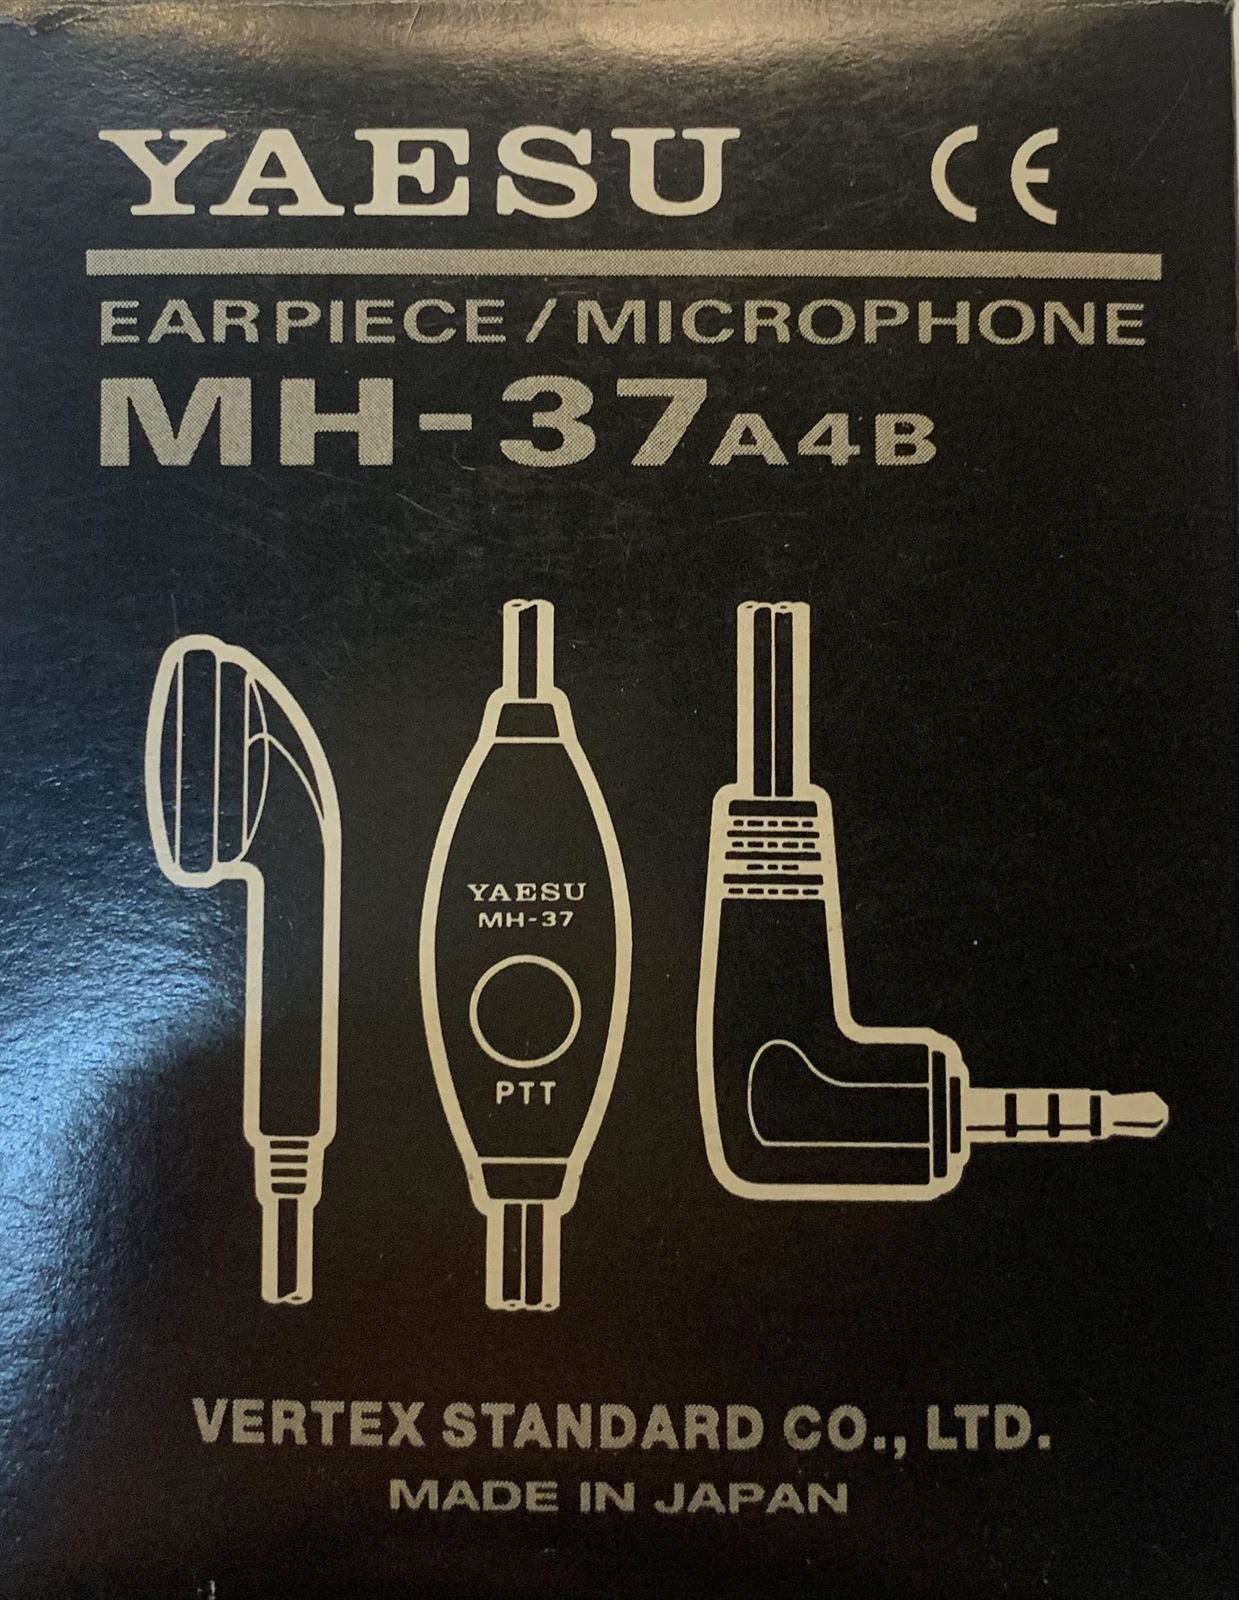 Micro/Auricular, toma lateral, PTT de solapa, orejera para walkie talkie YAESU con conector 3.5mm 4V. - Imagen 1